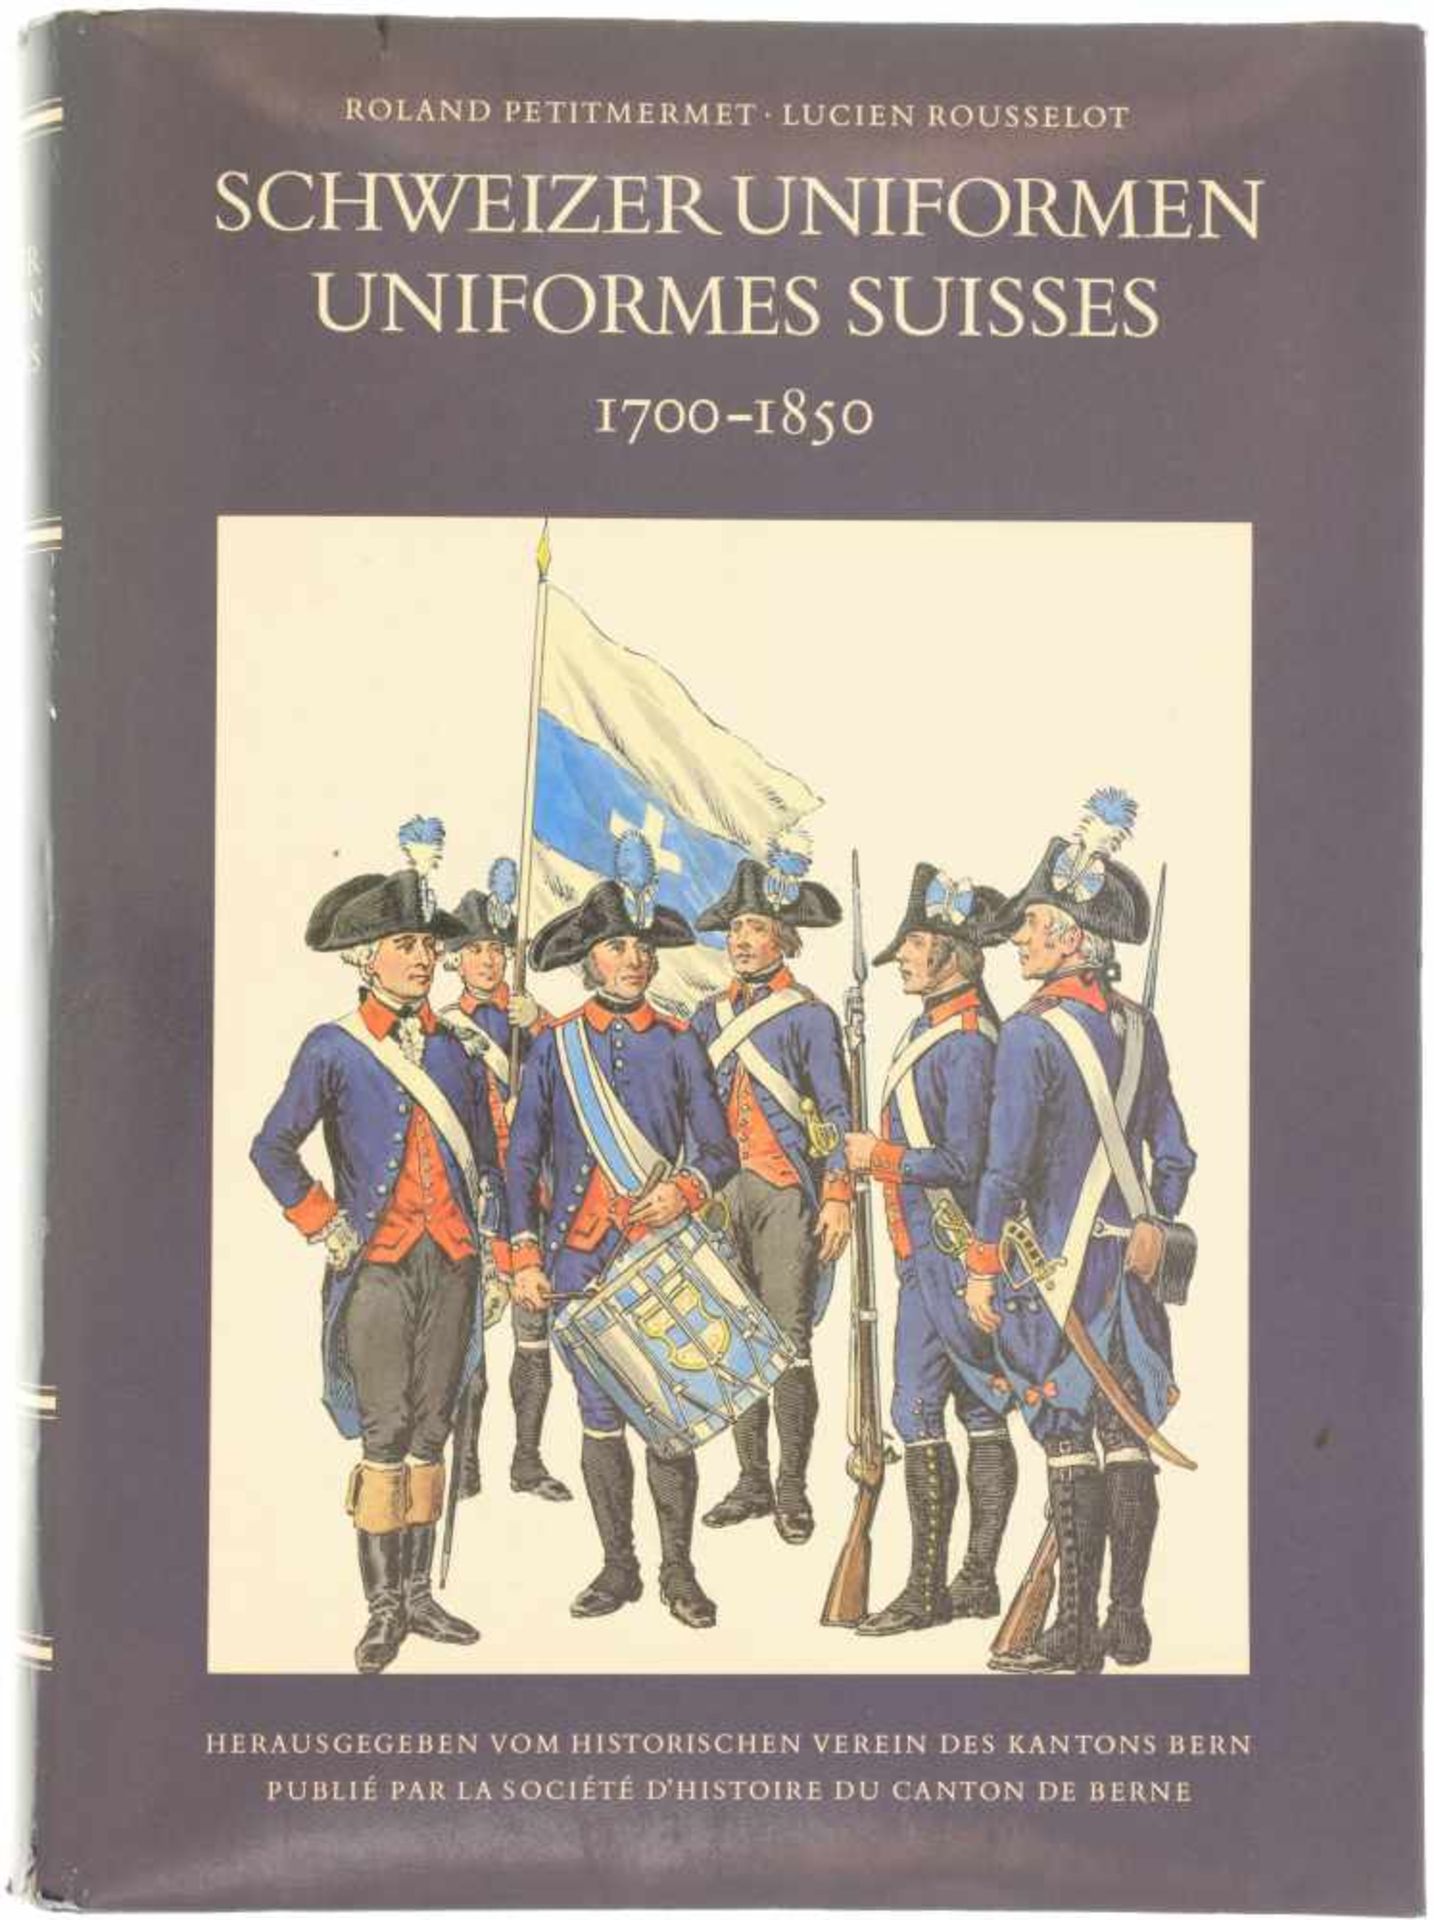 Schweizer Uniformen, 1700-1850 Auf 573 Seiten beschreiben die Autoren in deutsch und französisch die